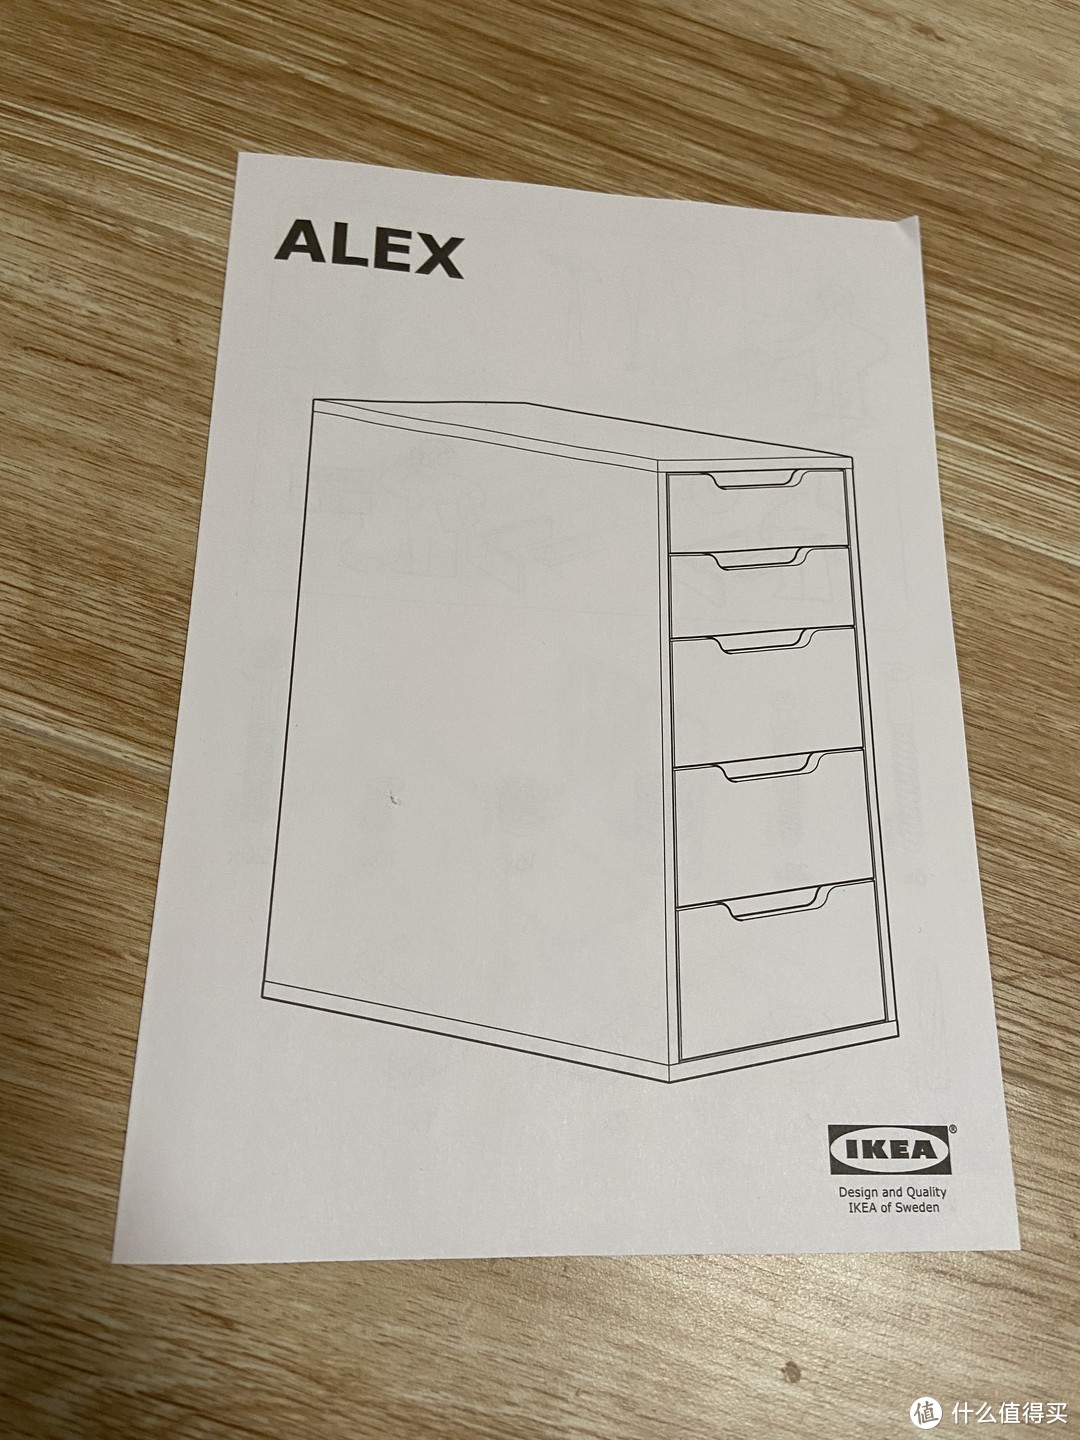 IKEA 宜家 ALEX 阿来斯 抽屉柜组装记,双十一线下购物